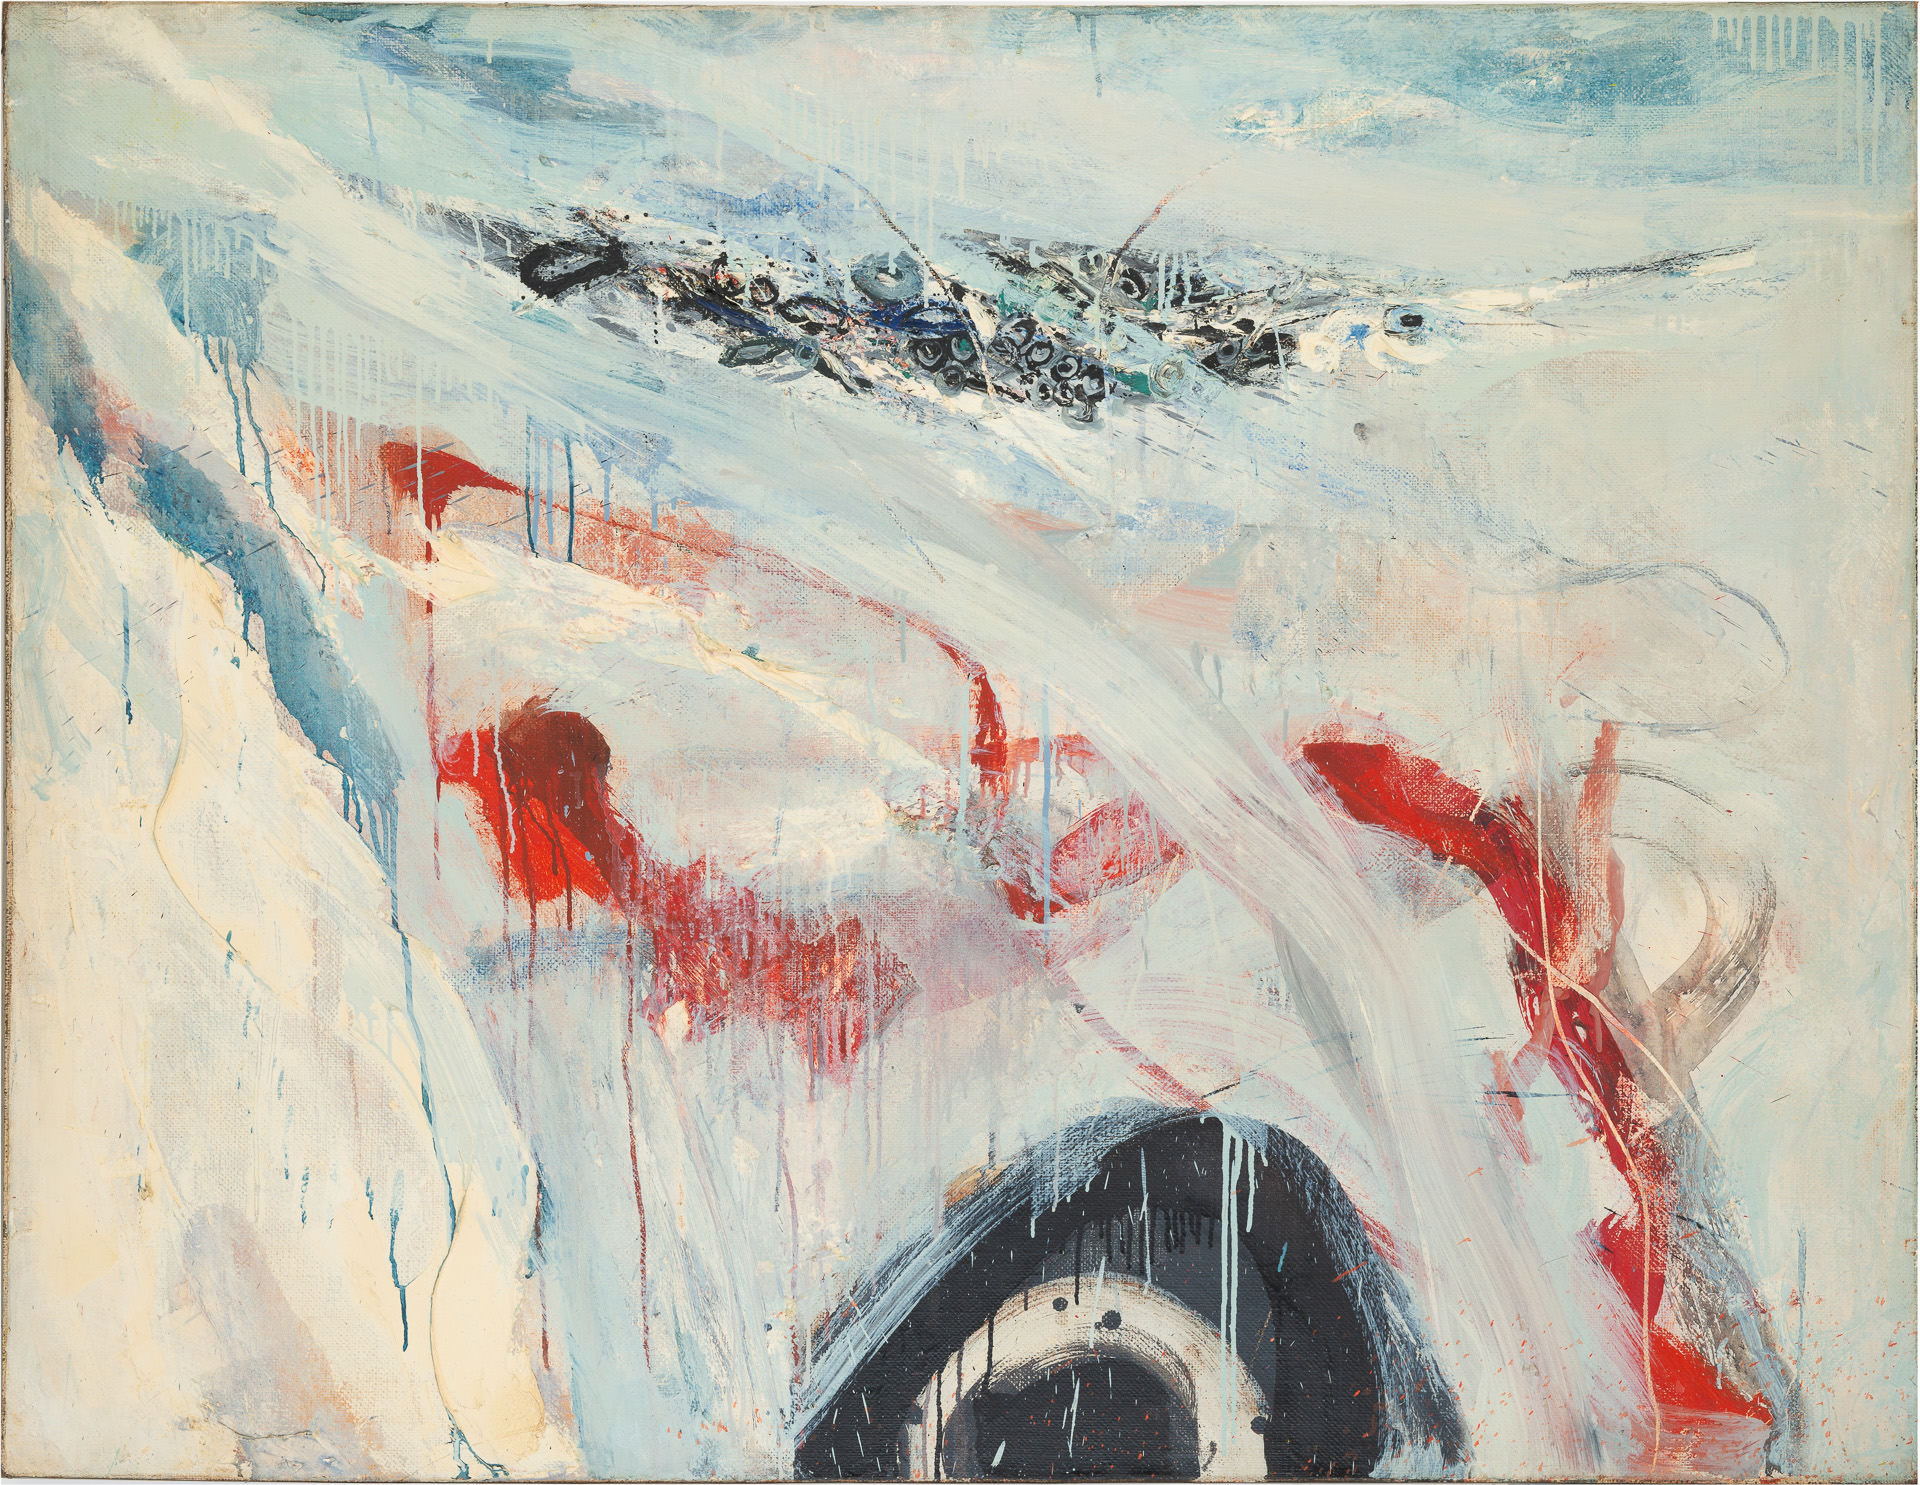 近藤竜男〈Work〉, 油彩・カンヴァス, 113.2×145.7, 1961